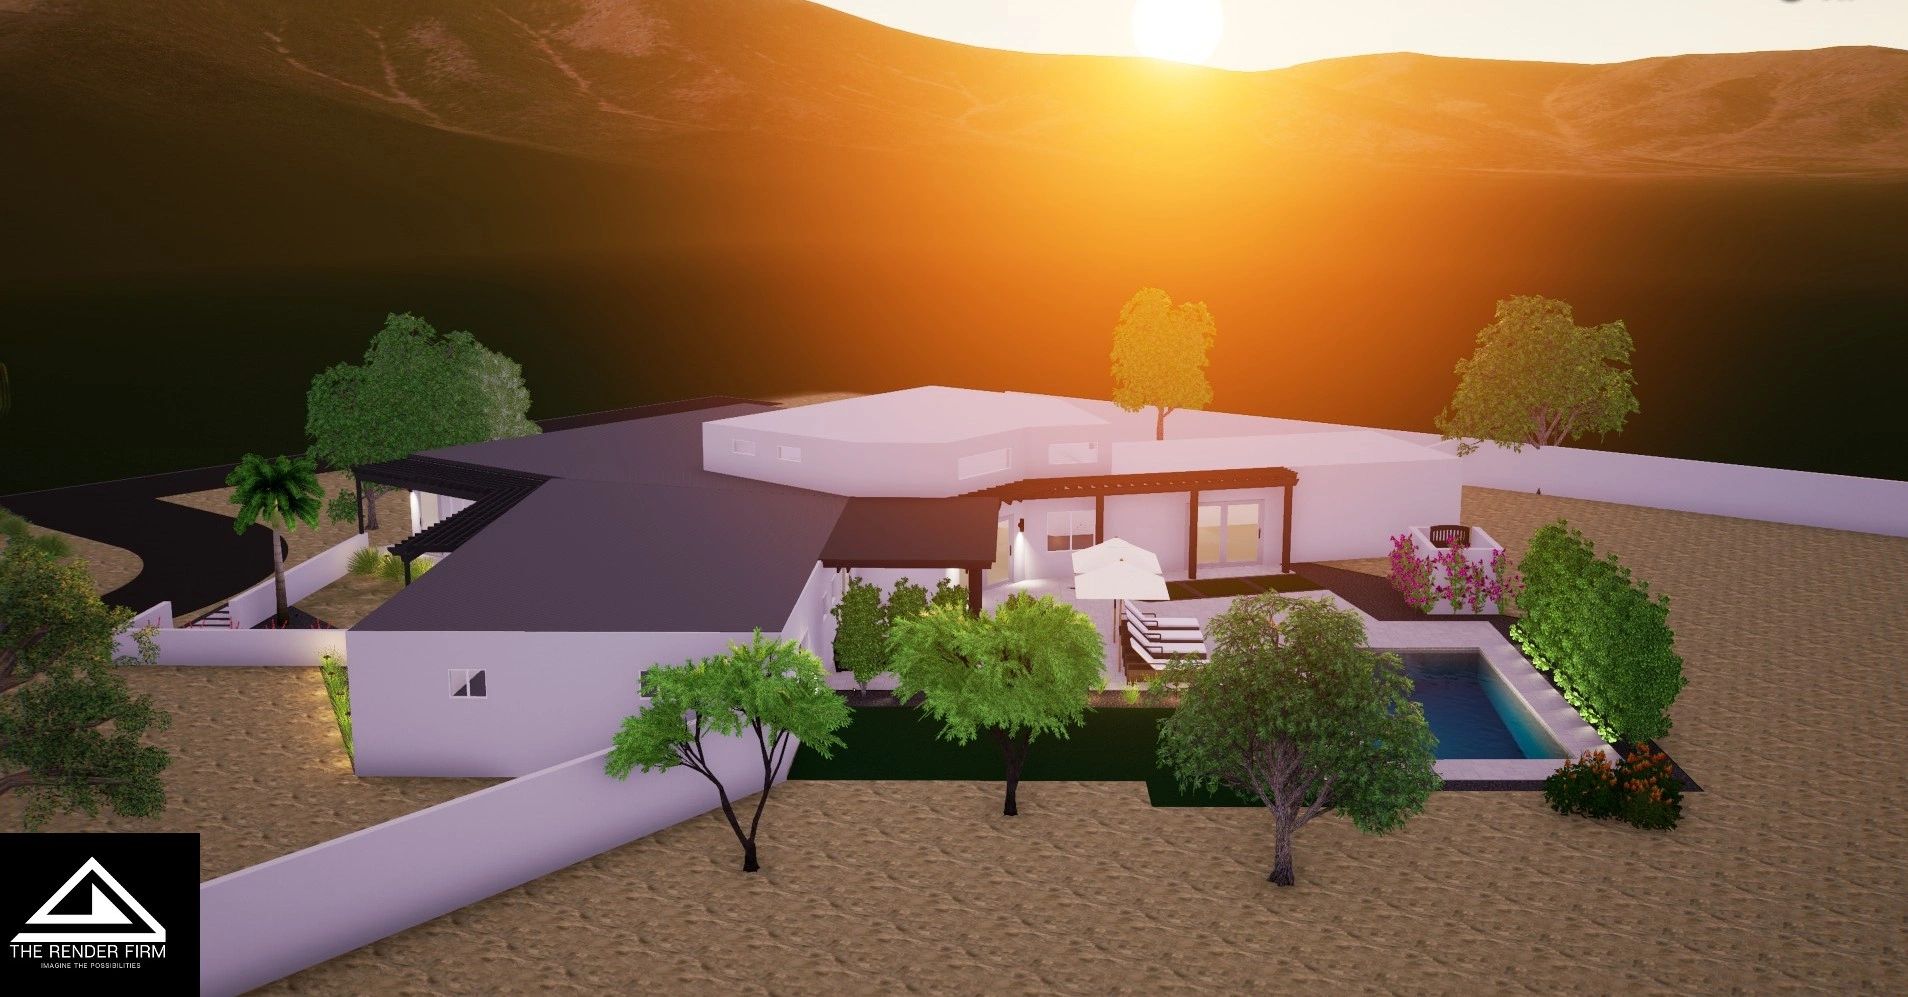 Scottsdale Arizona real estate 3 D renderings